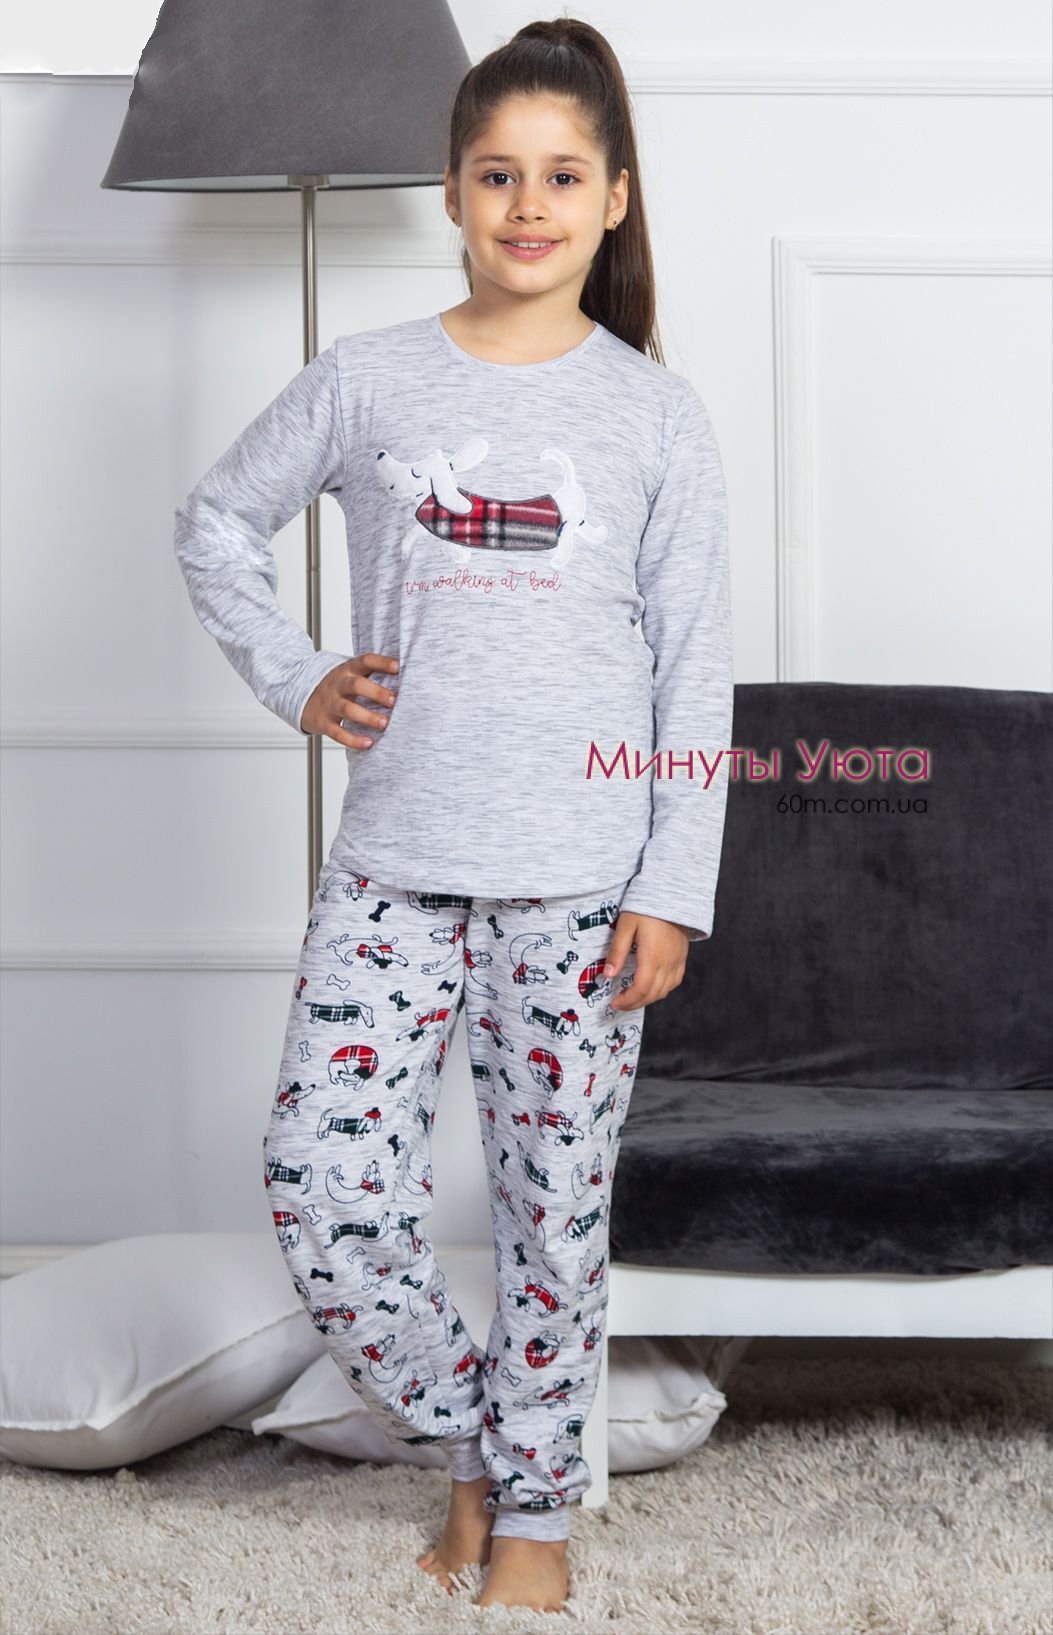 Утепленная пижама для девочки серого цвета с принтом собаки 